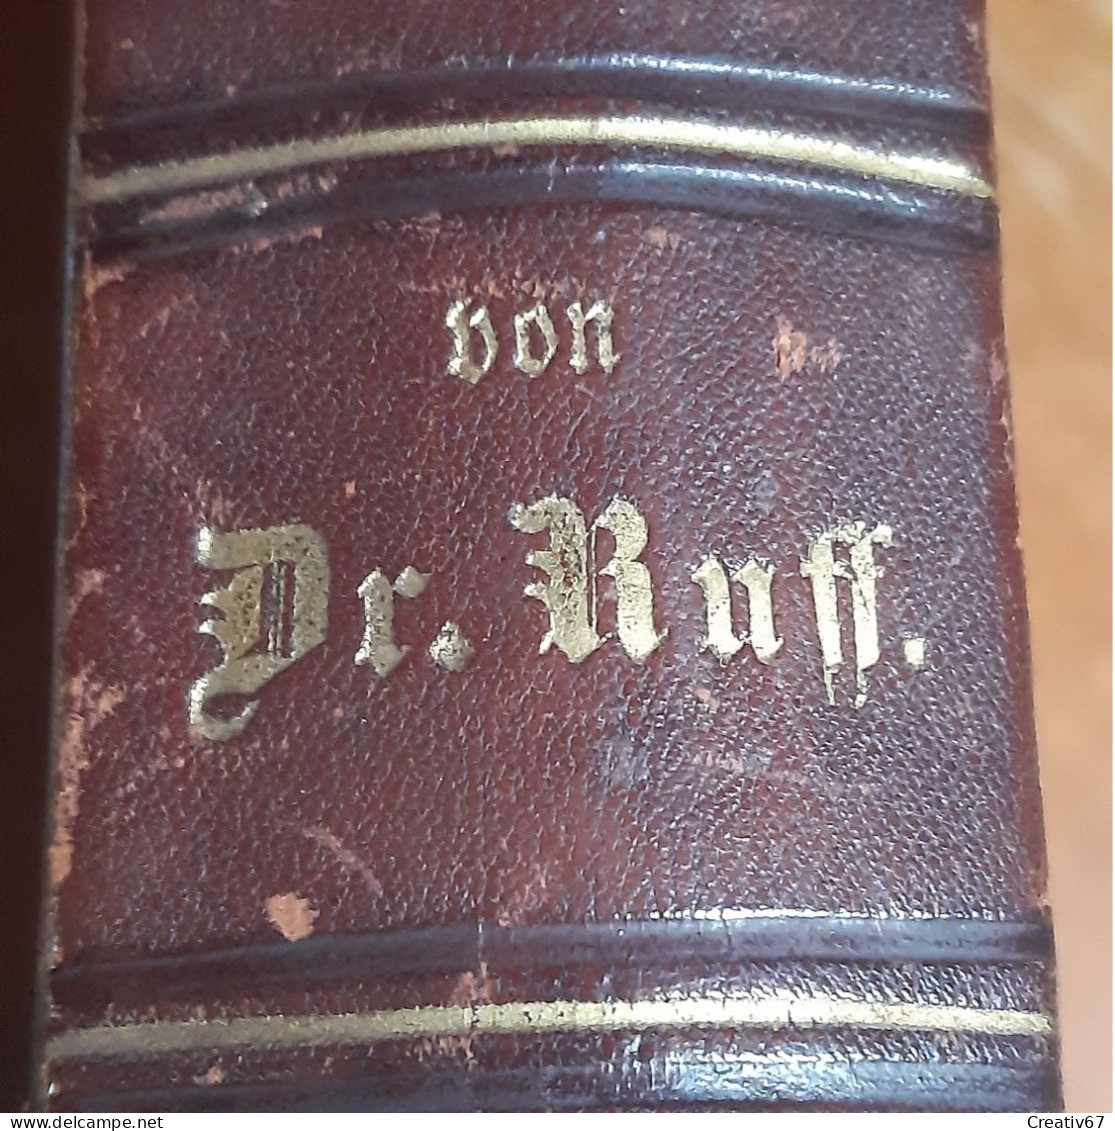 Gesundheit Lexikon Von Dr. Ruff 1882 Illustré Relié Cuir Très Bon état Selon Photos (cs) - Dictionaries